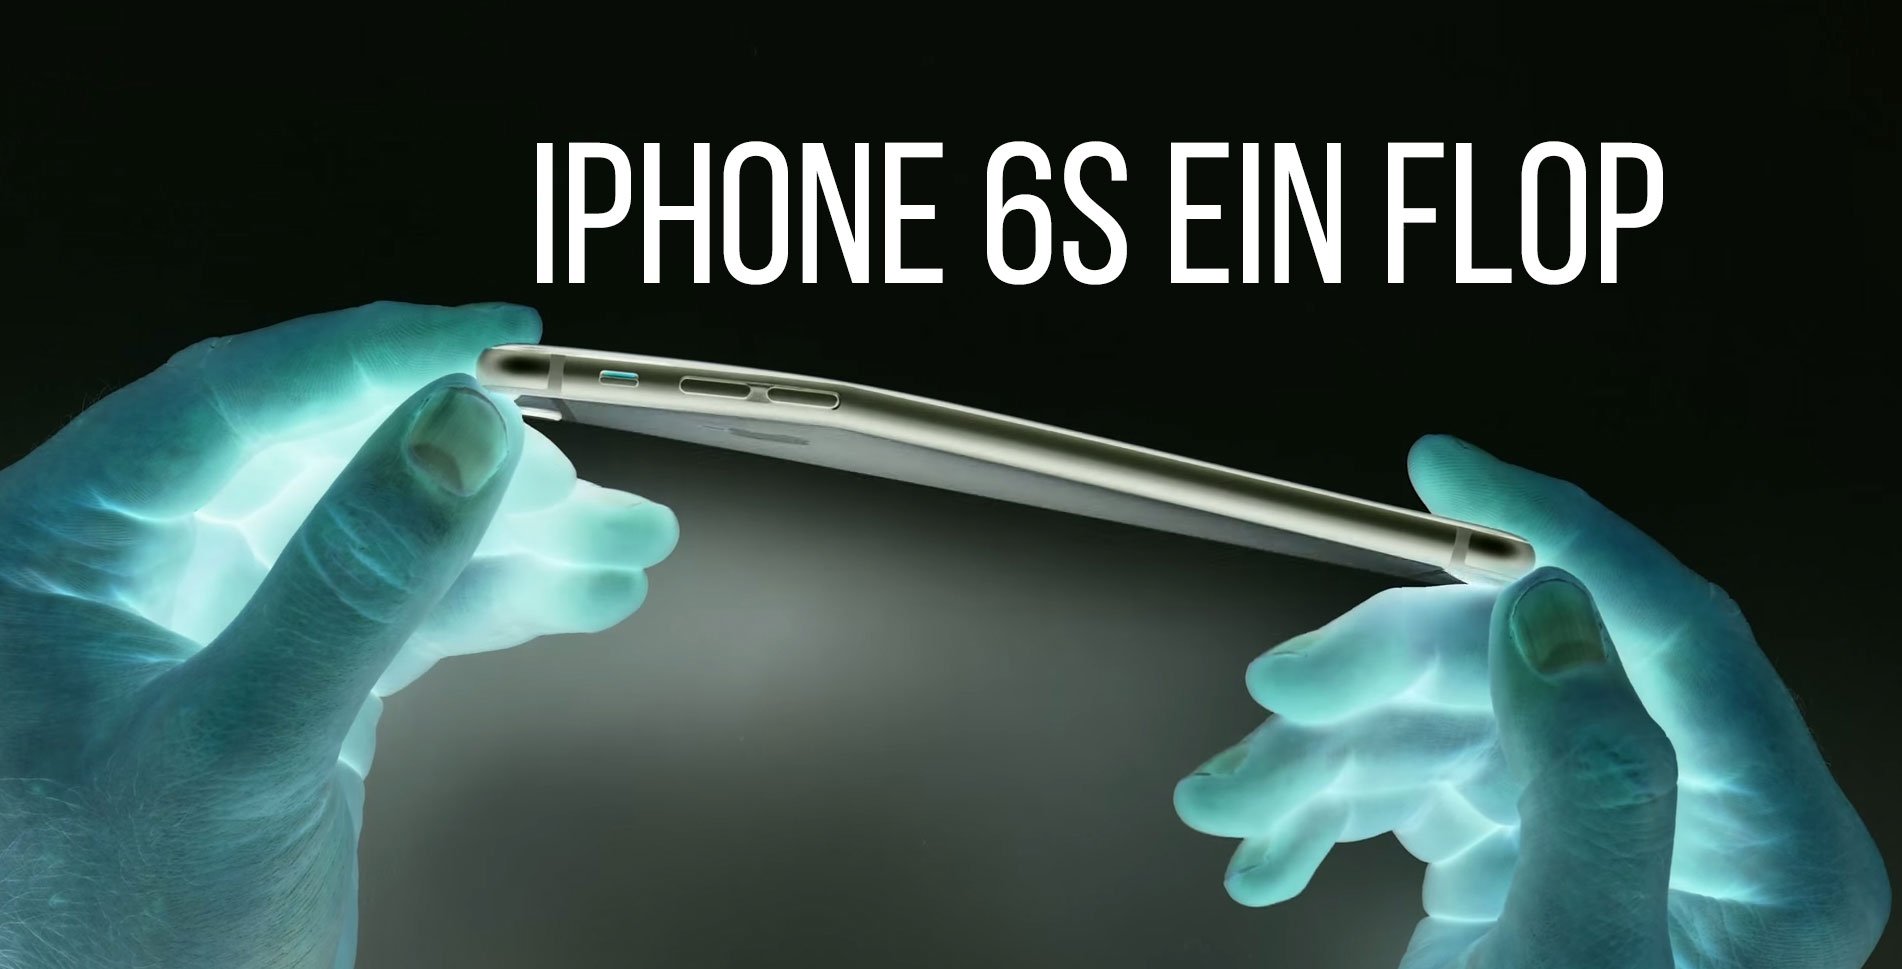 Apple iPhone 6S ein Flop: keiner will das neue iPhone? 4